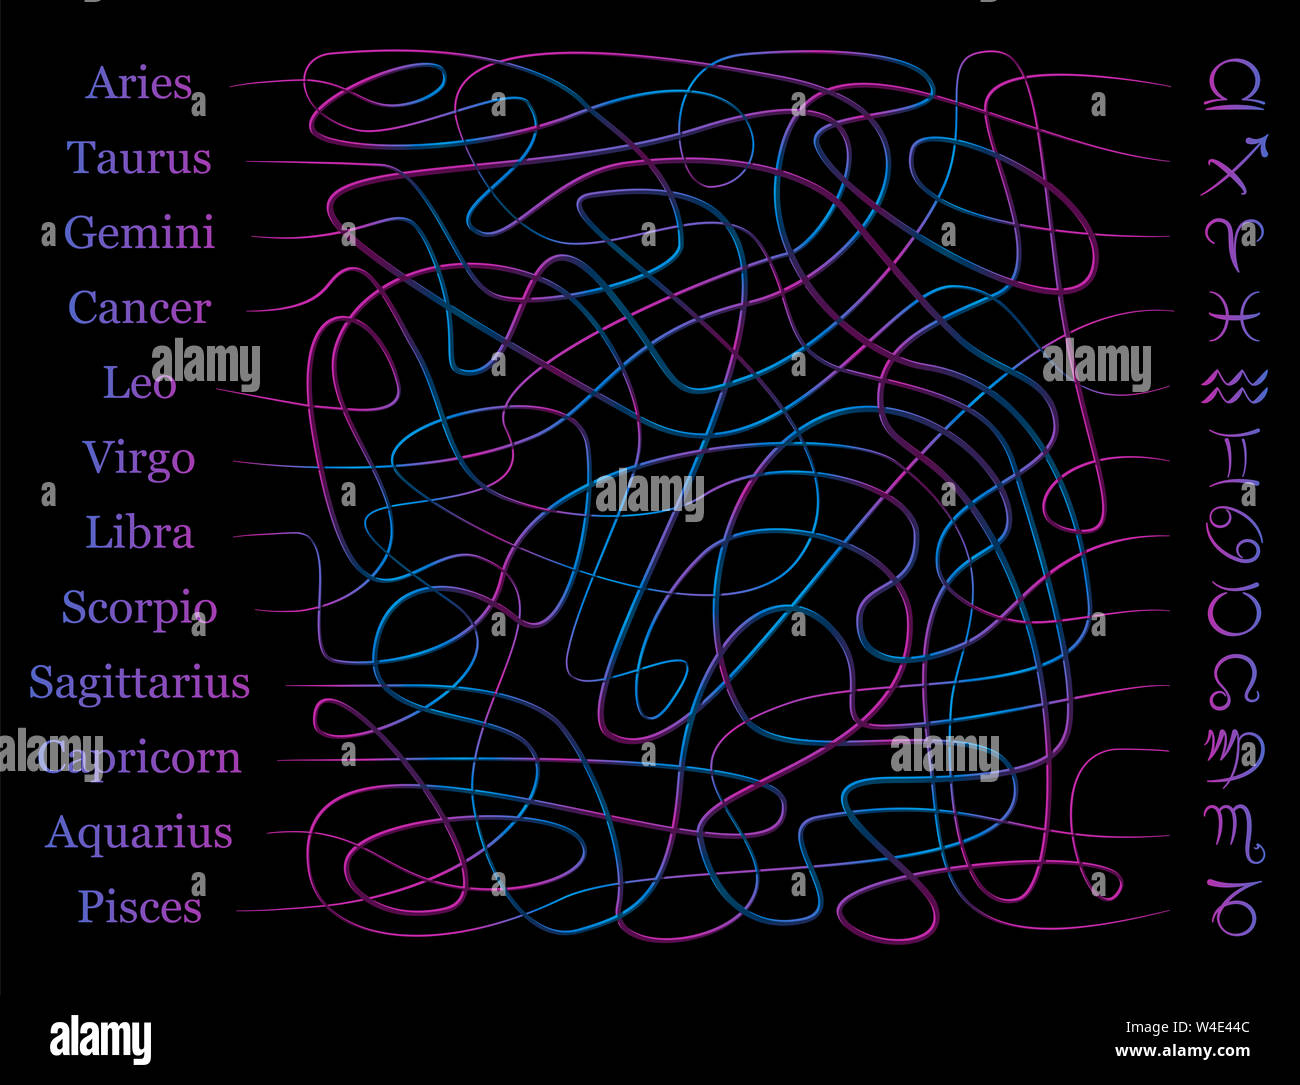 Simboli di astrologia labirinto. Il segno dello zodiaco labirinto. Trovare il giusto modo di mistica aggrovigliati linee per collegare i nomi con i simboli. Foto Stock